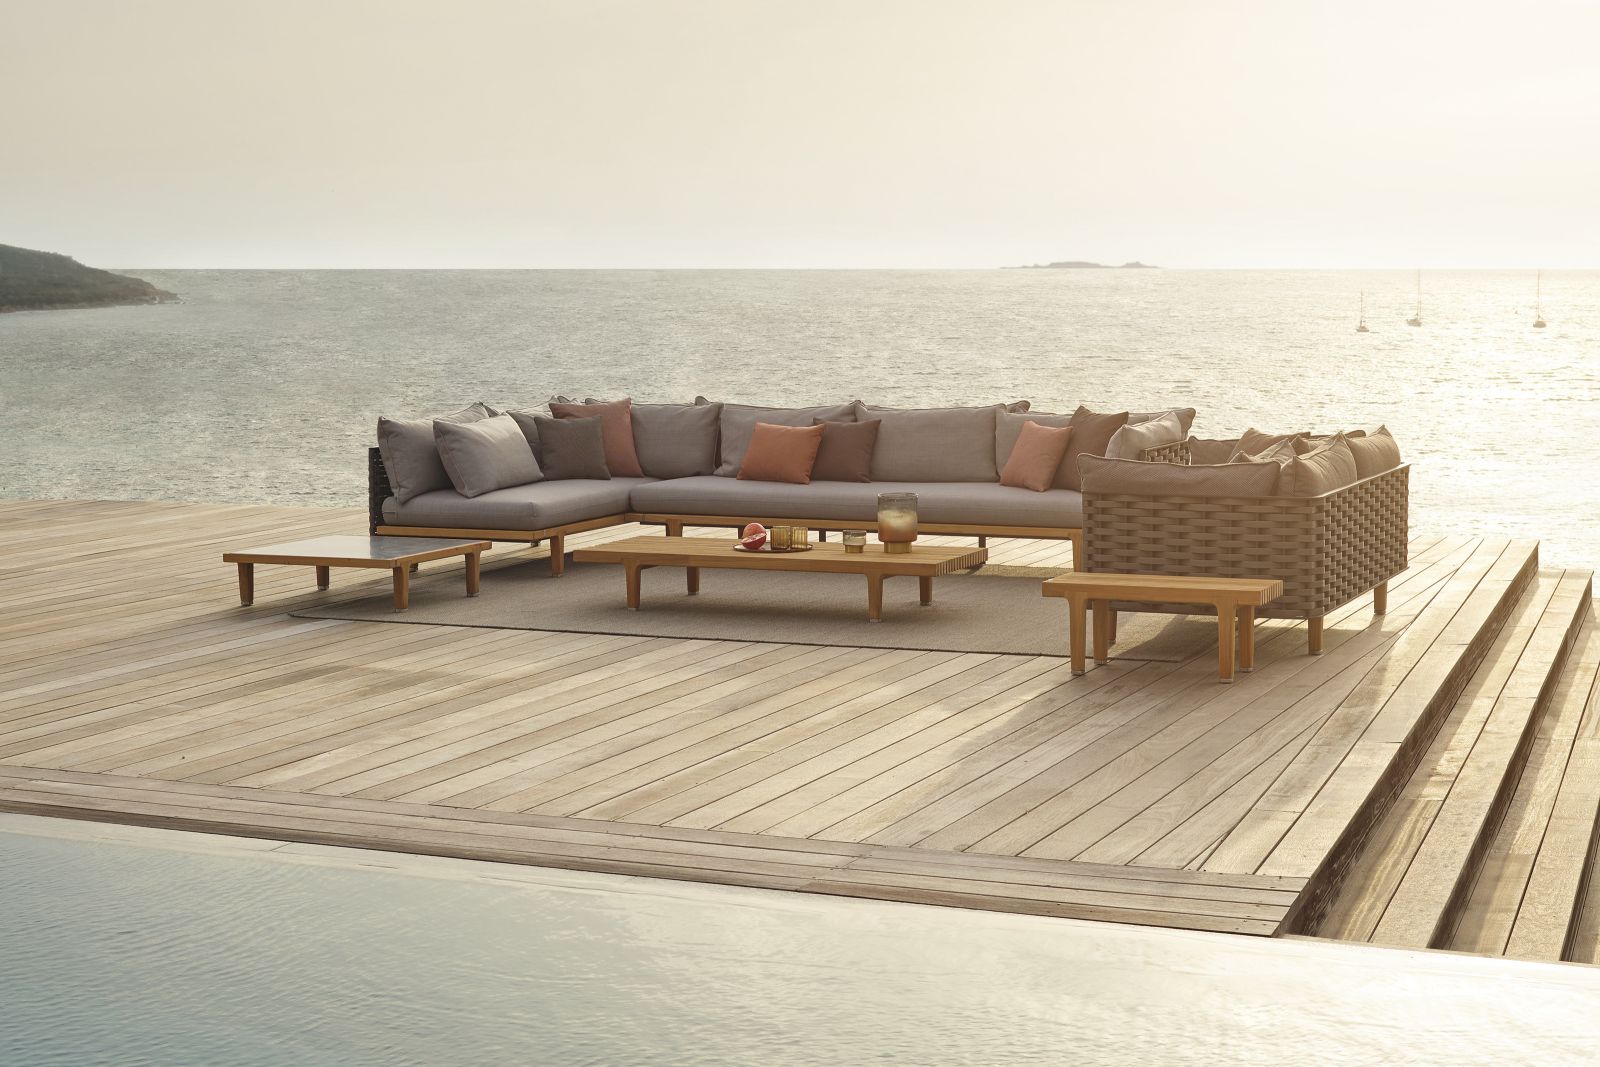 Das luxuriöse Lounge-System Sealine von Jean-Marie Massaud besteht aus zwei- und dreisitzigen Sofamodulen, Daybed-Elementen, einer Teak-Bank sowie Couchtischen mit Stein- und Marmortischplatten.